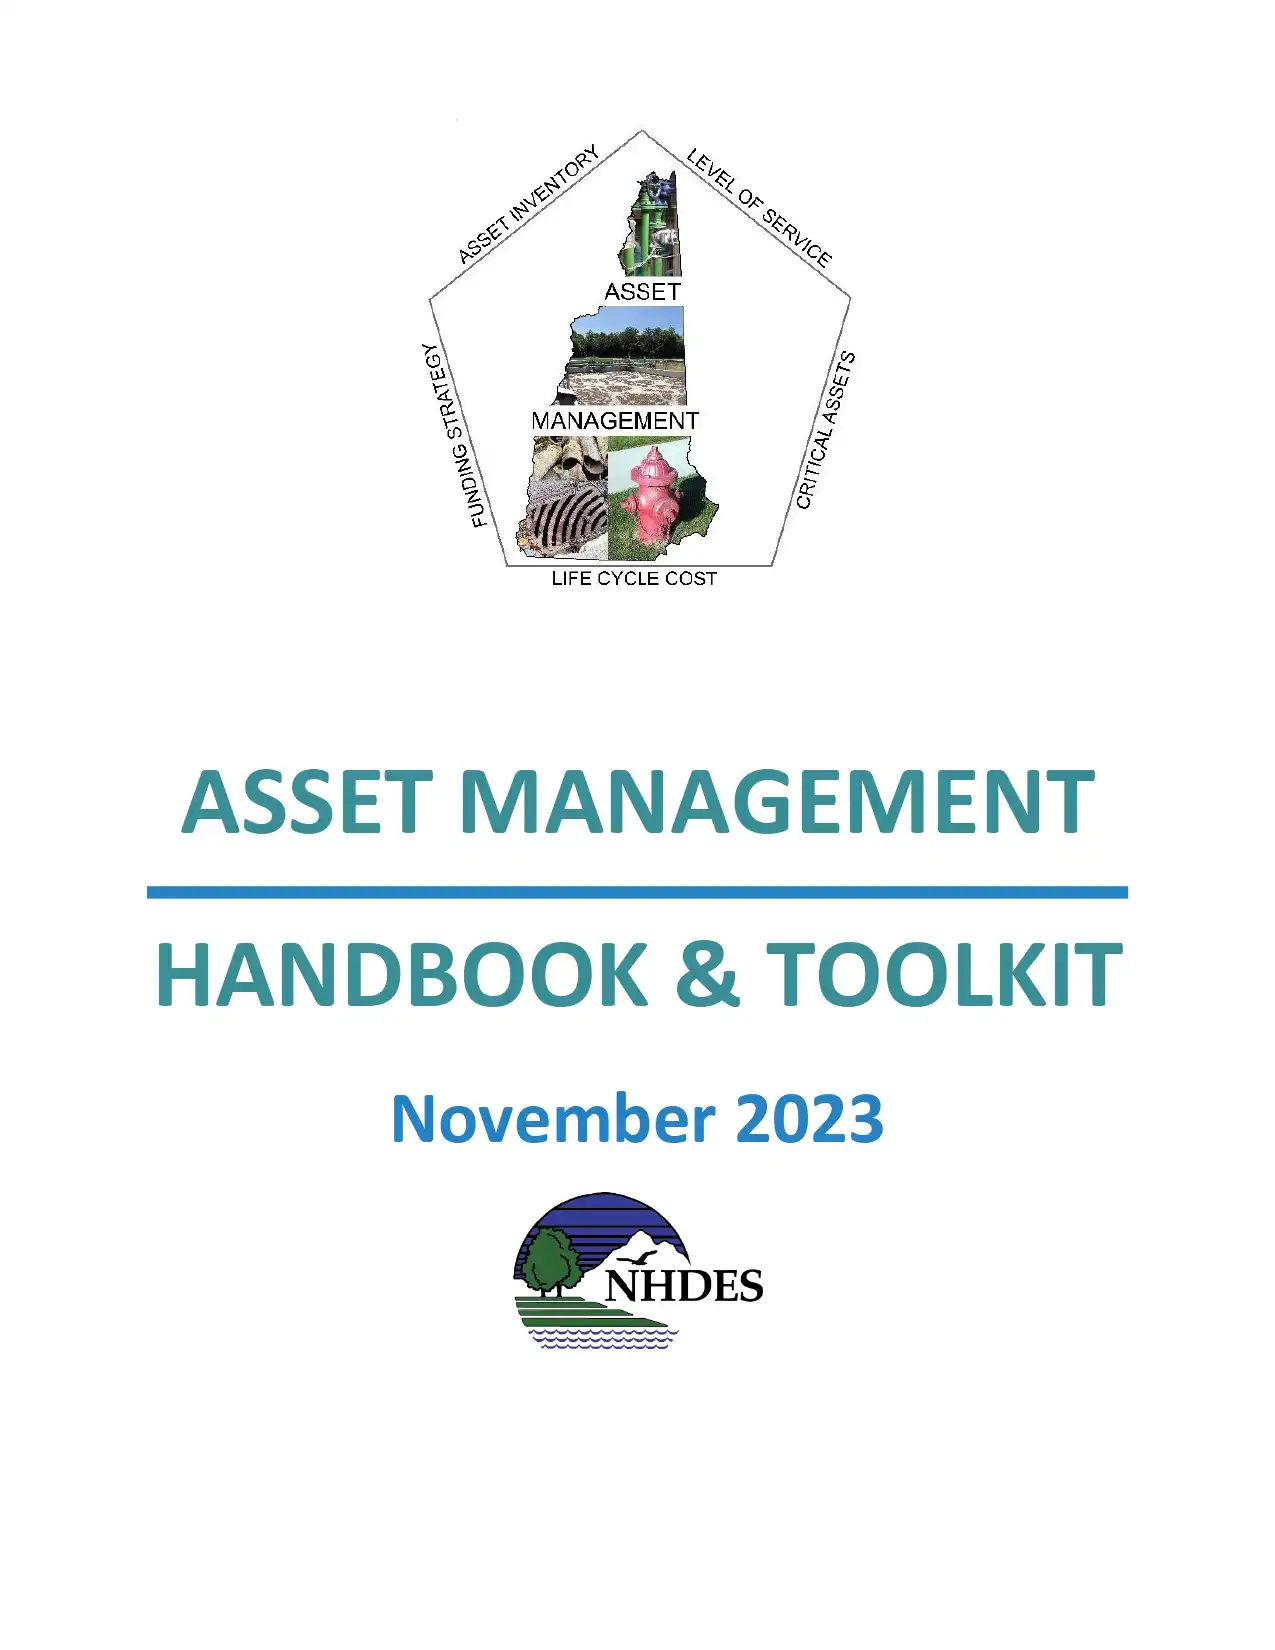 Asset Management Handbook & Toolkit